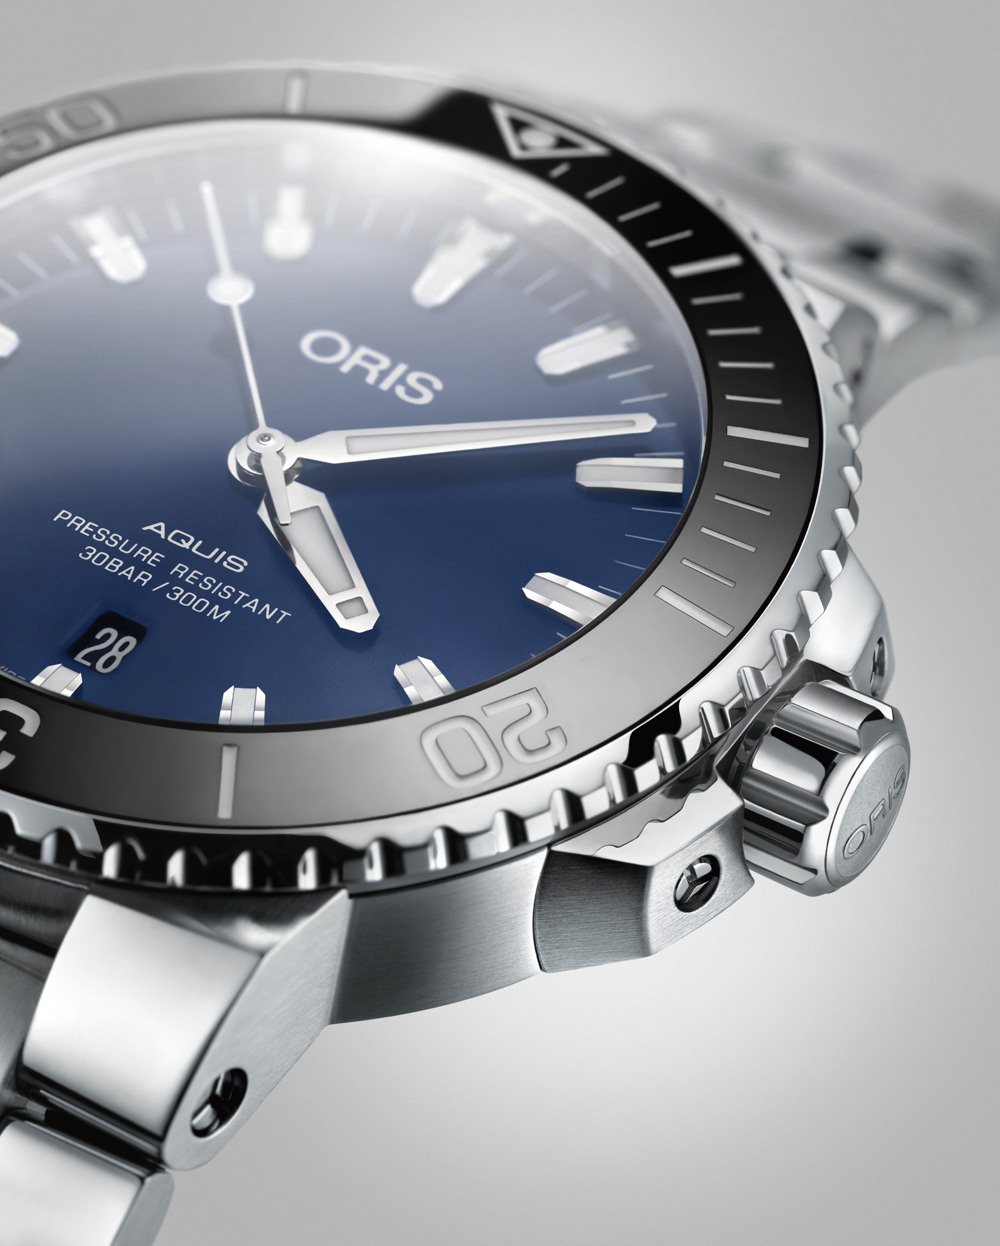 Versatile men's watches by Oris